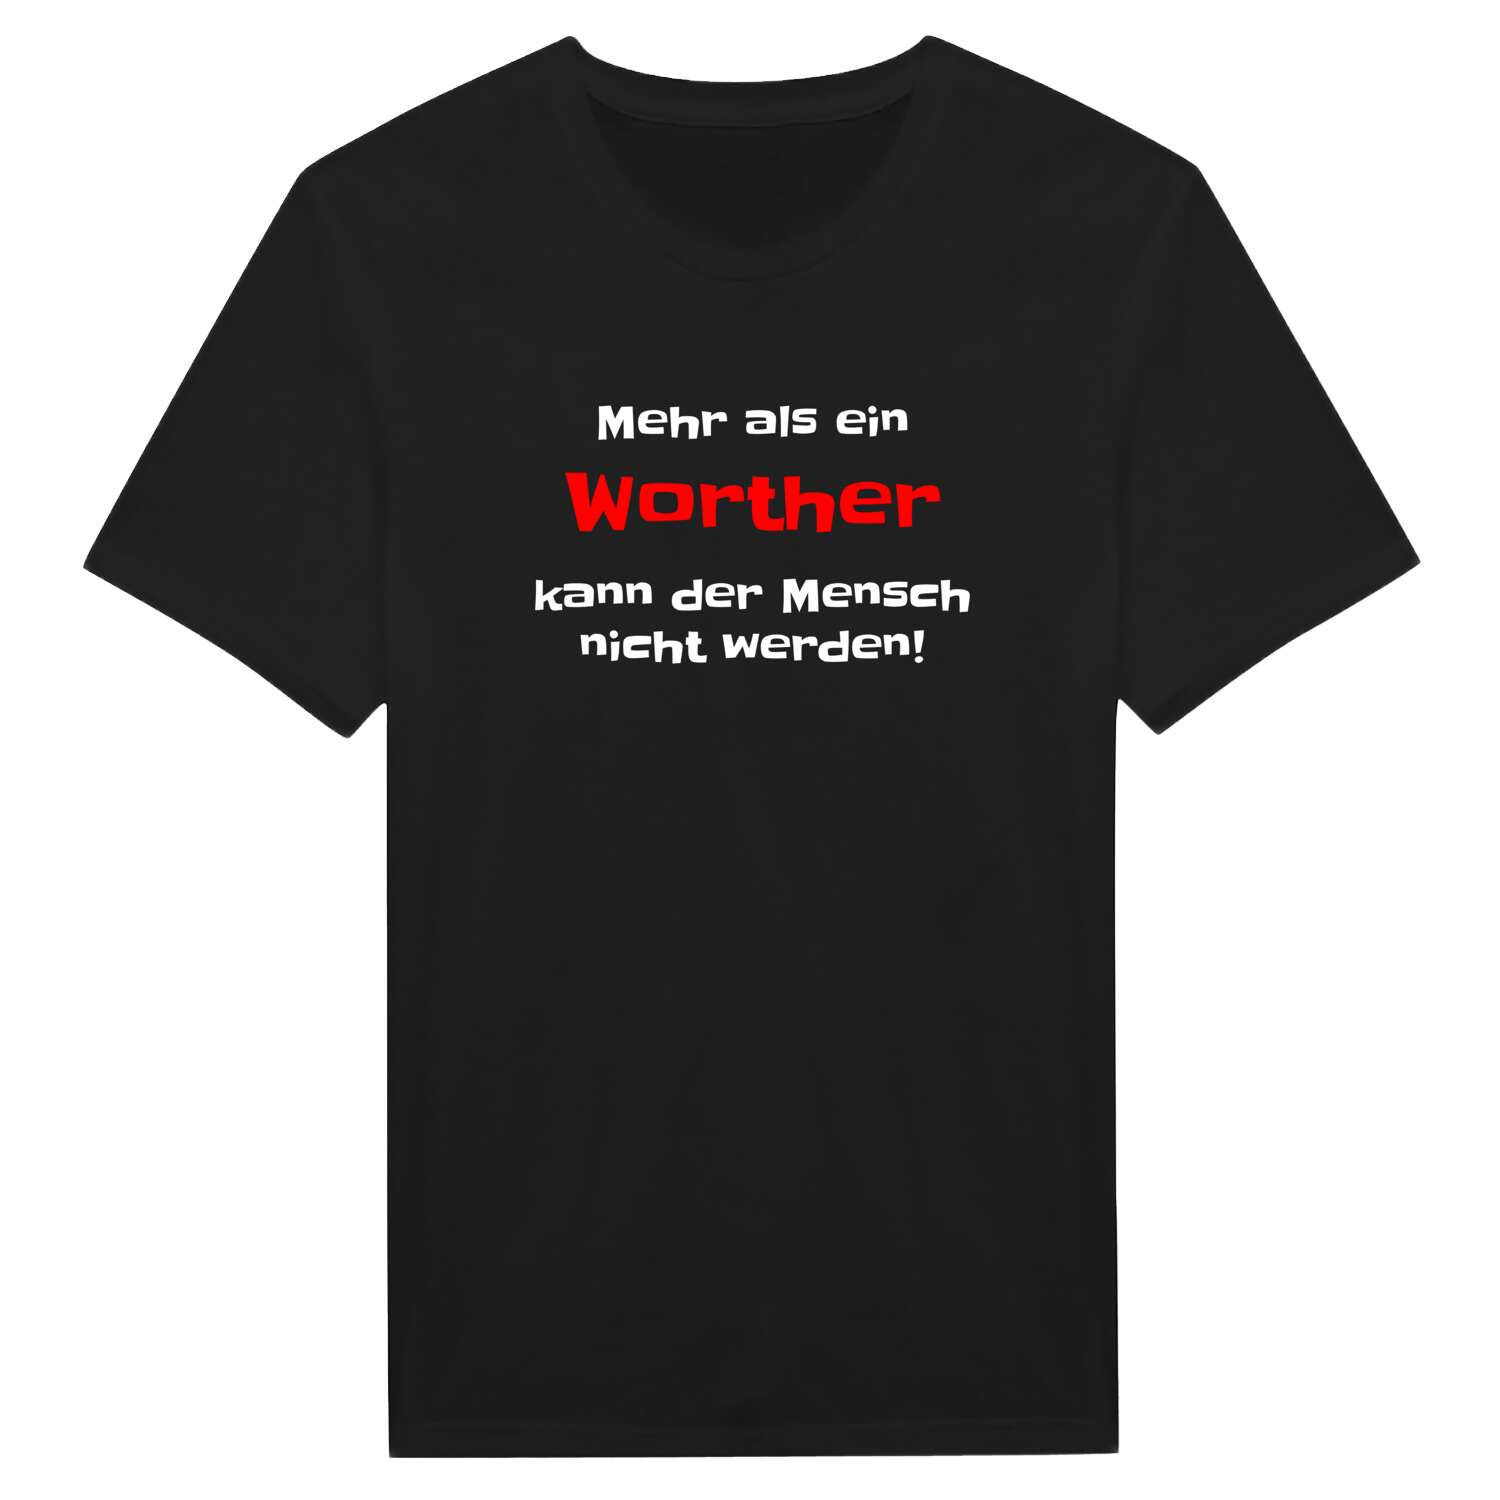 Worth T-Shirt »Mehr als ein«